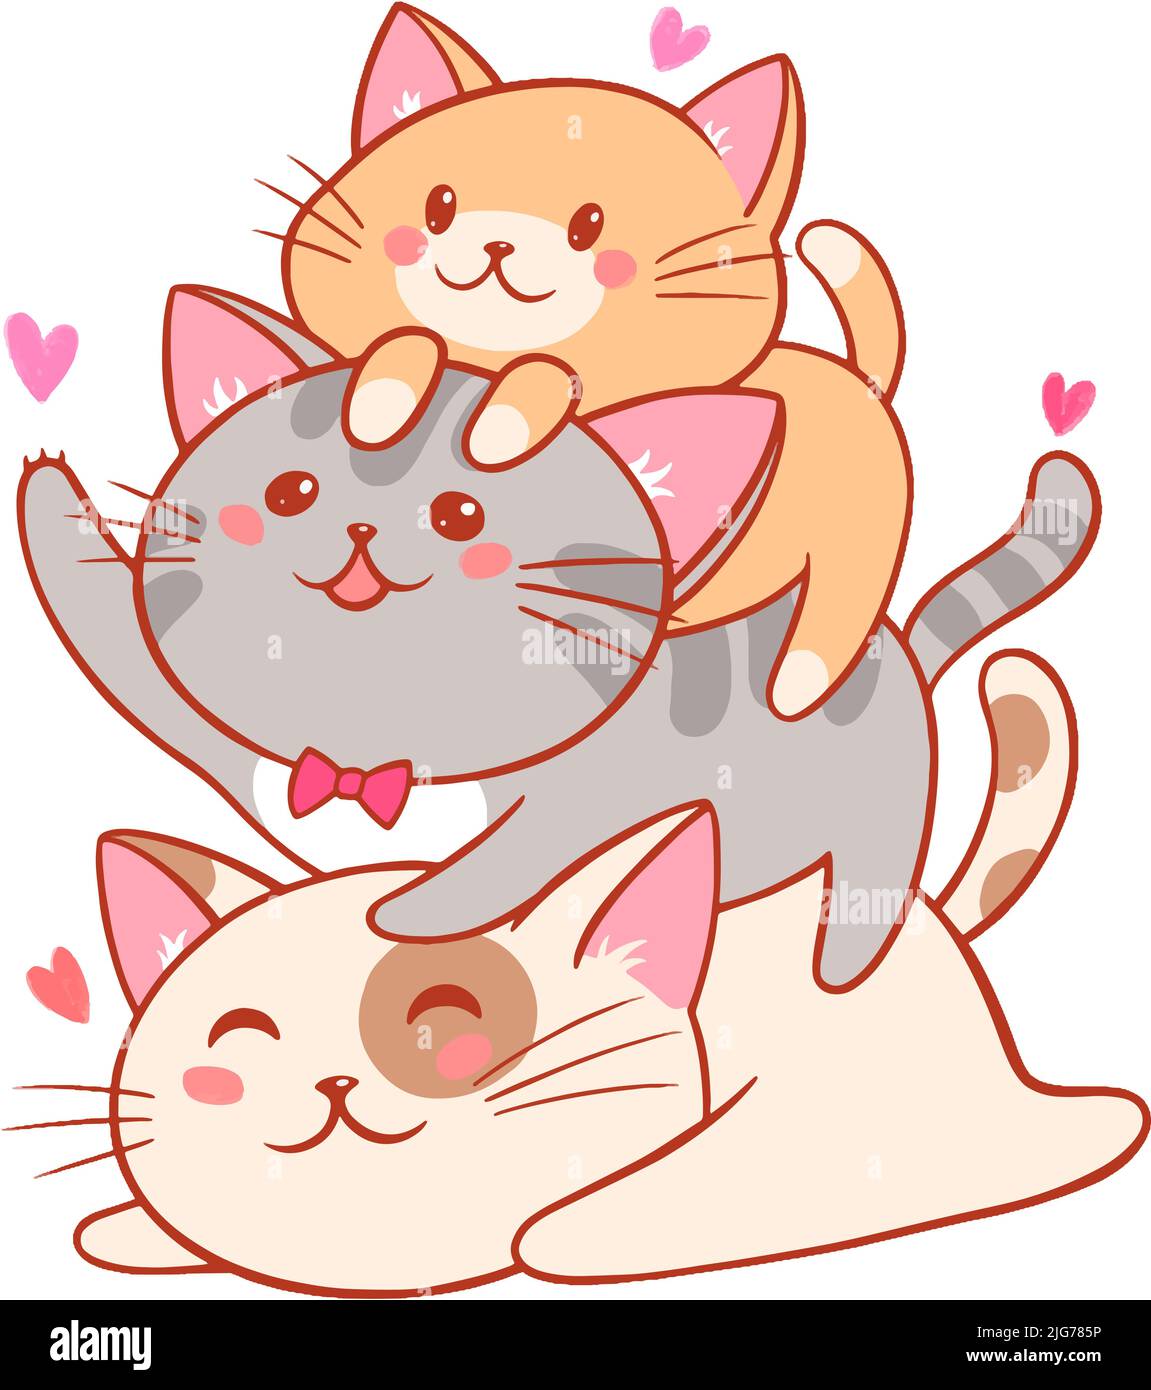 Chat petit chat dessin animé kawaii, empilé. Illustration vectorielle Illustration de Vecteur